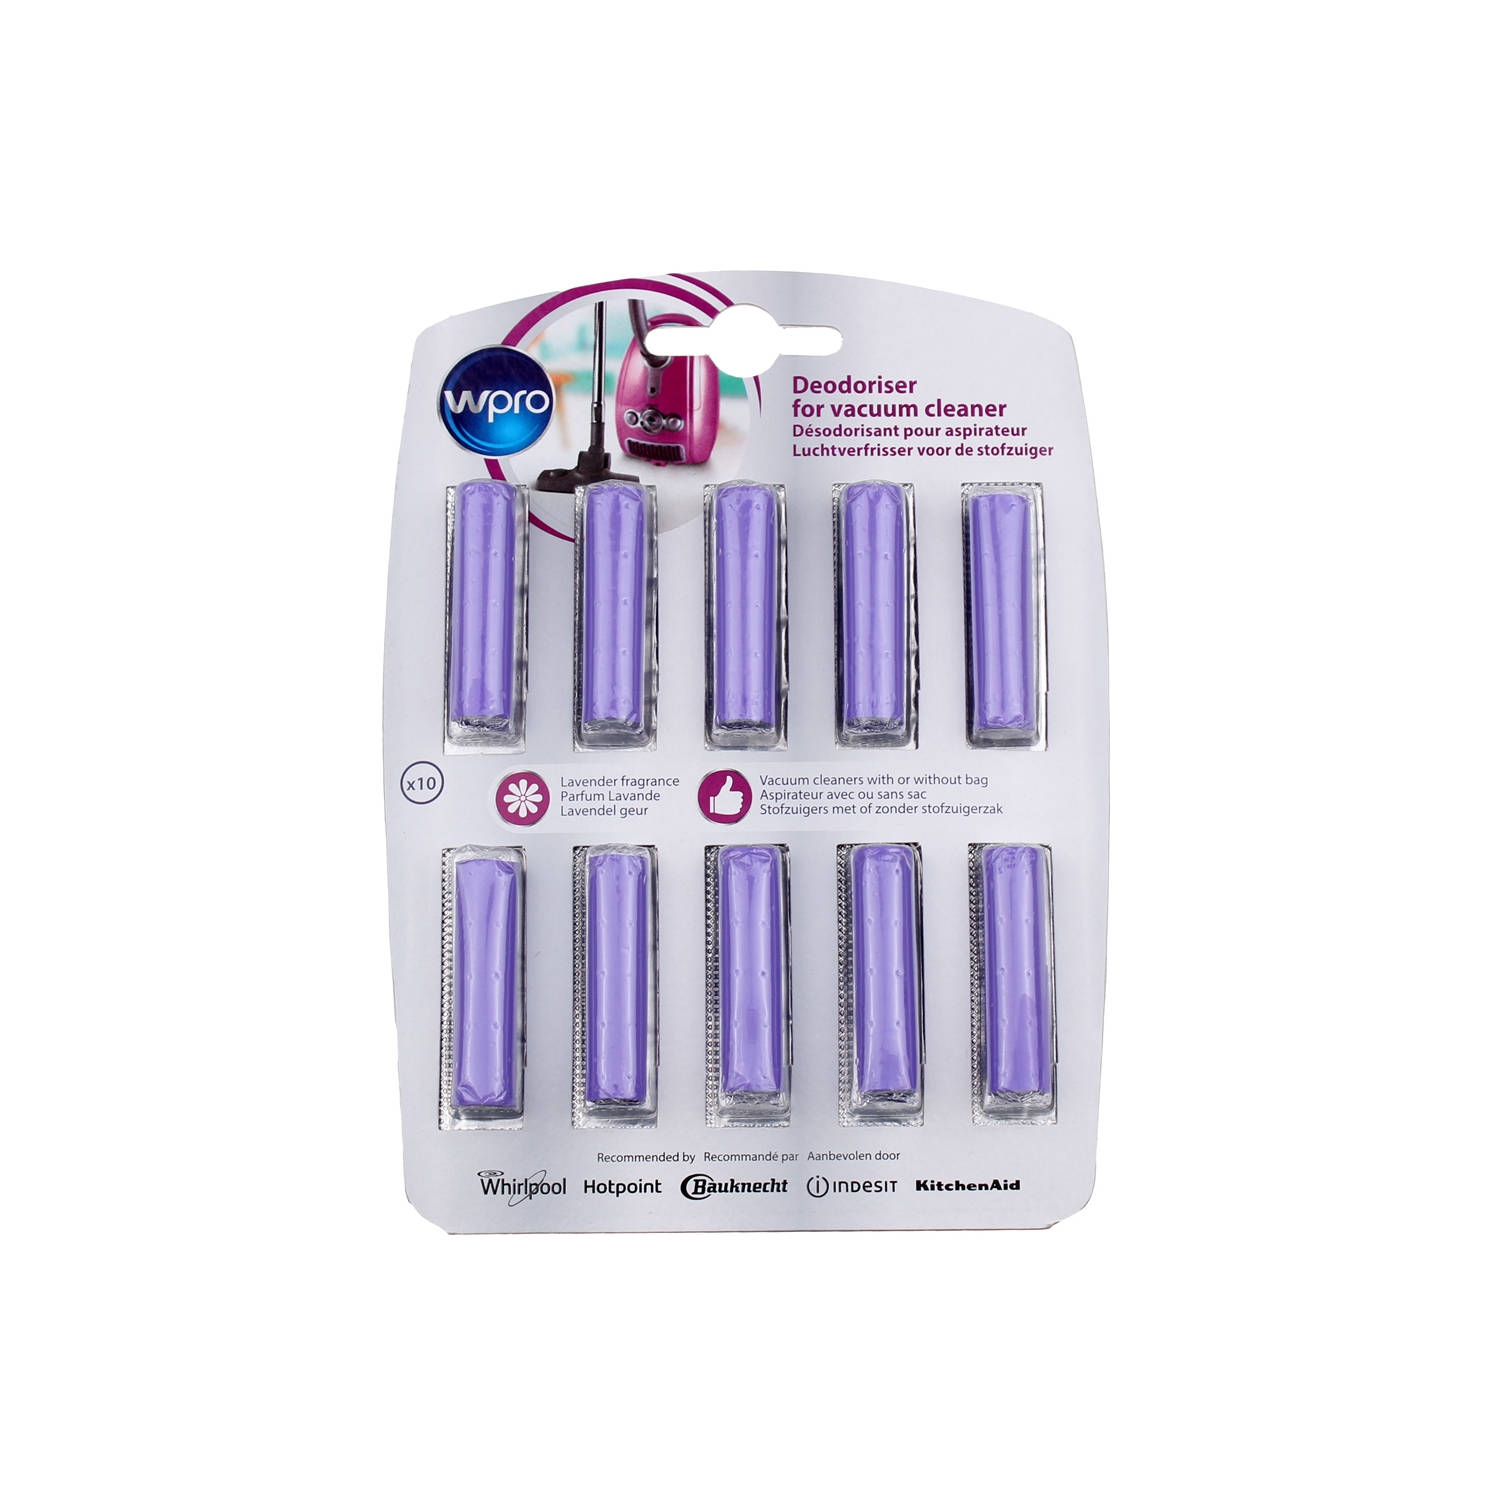 Whirlpool 10 Cartridges For Vacuum Cleaner Lavande 484000008607